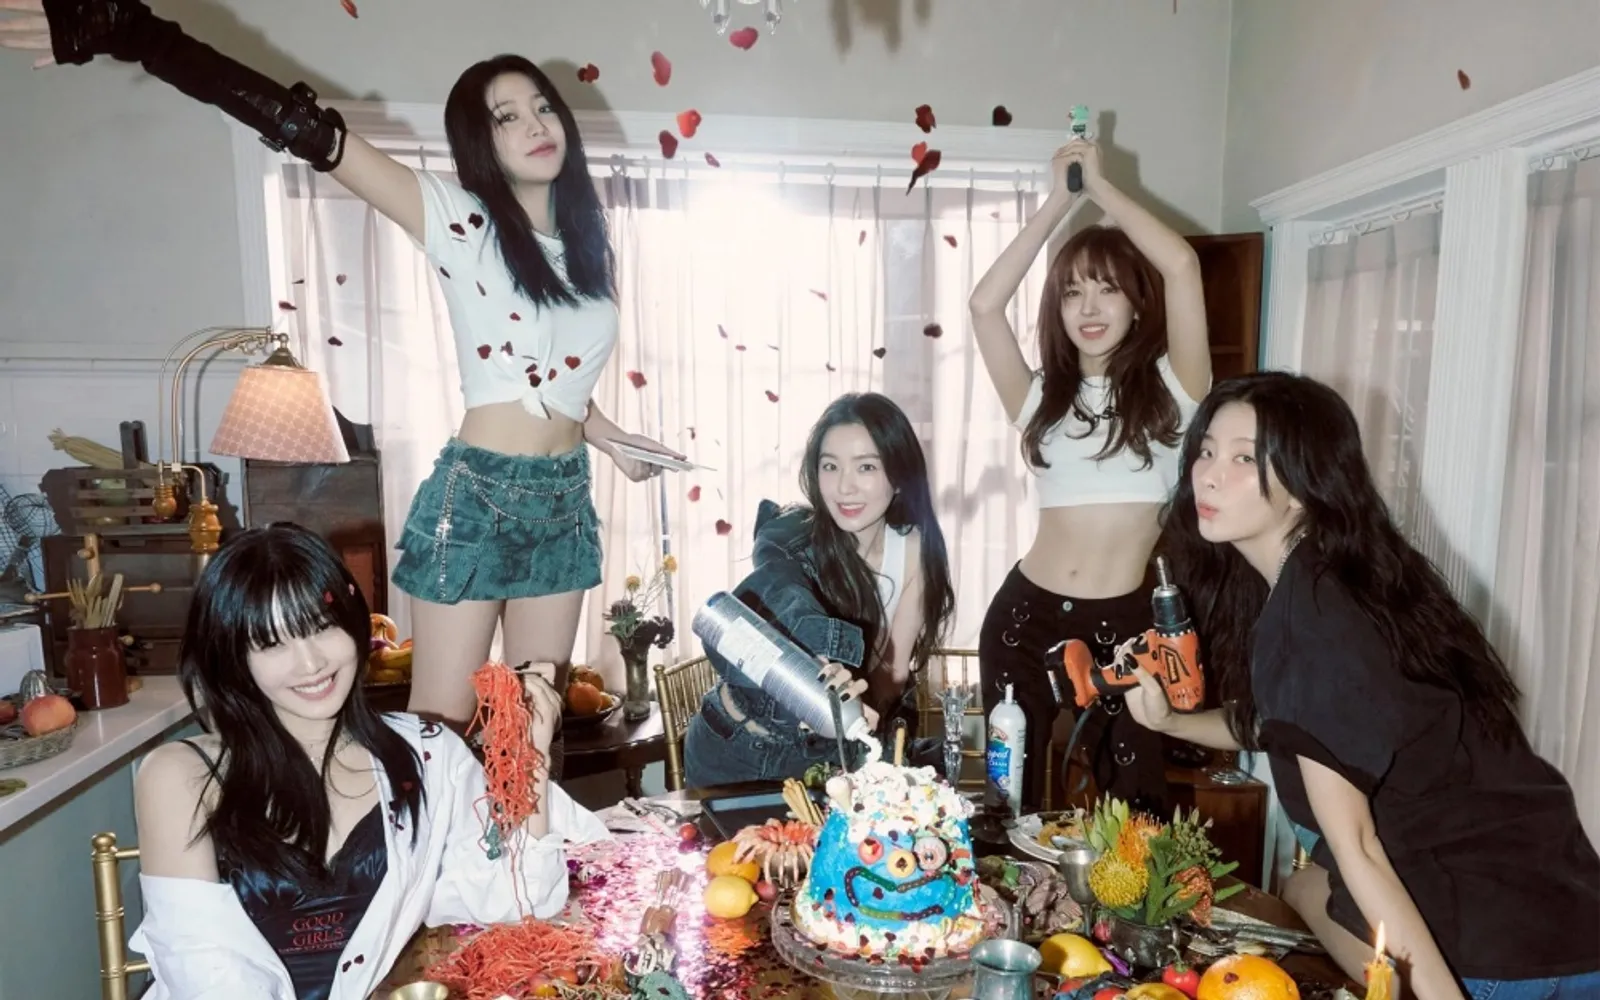 Lirik Lagu "Birthday" - Red Velvet, Kado Spesial untuk Orang Tersayang